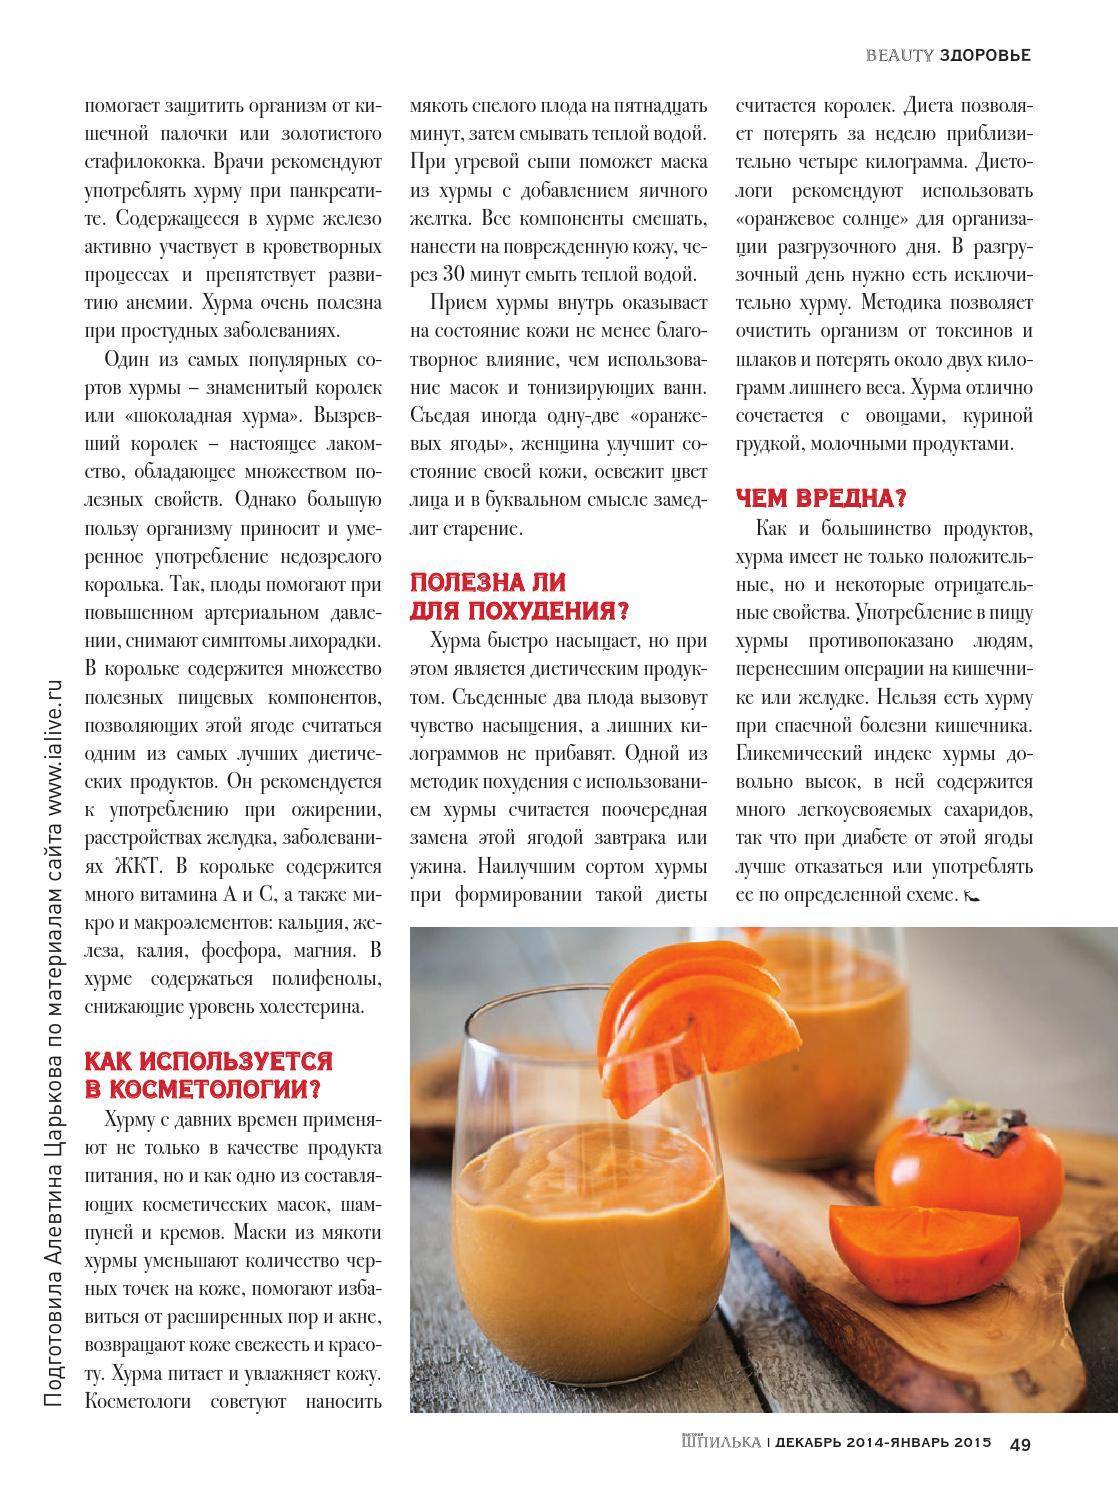 Можно ли есть хурму кормящей маме: правила употребления фрукта в период грудного вскармливания / mama66.ru